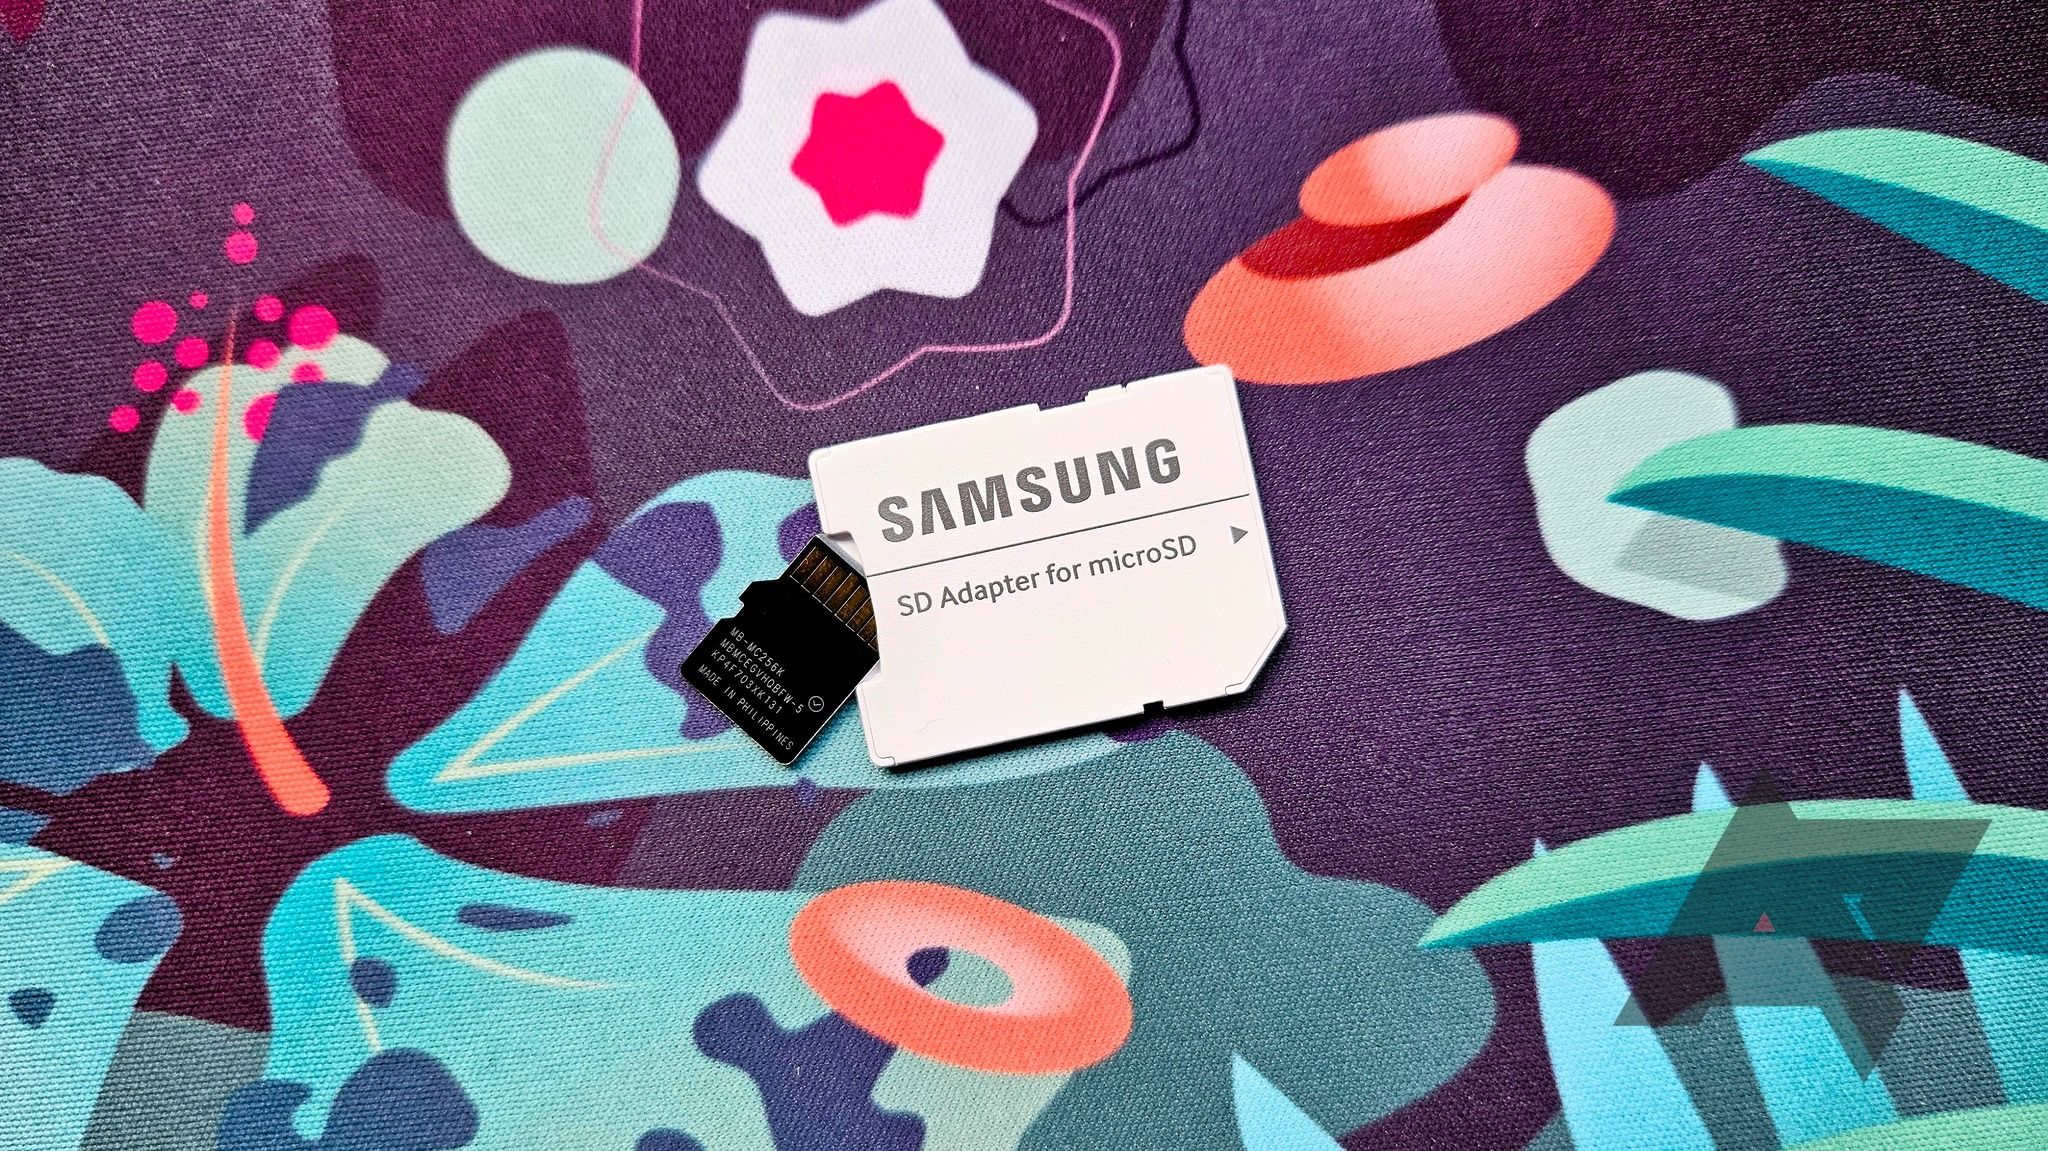 Samsung microSD card with an SD card adapter